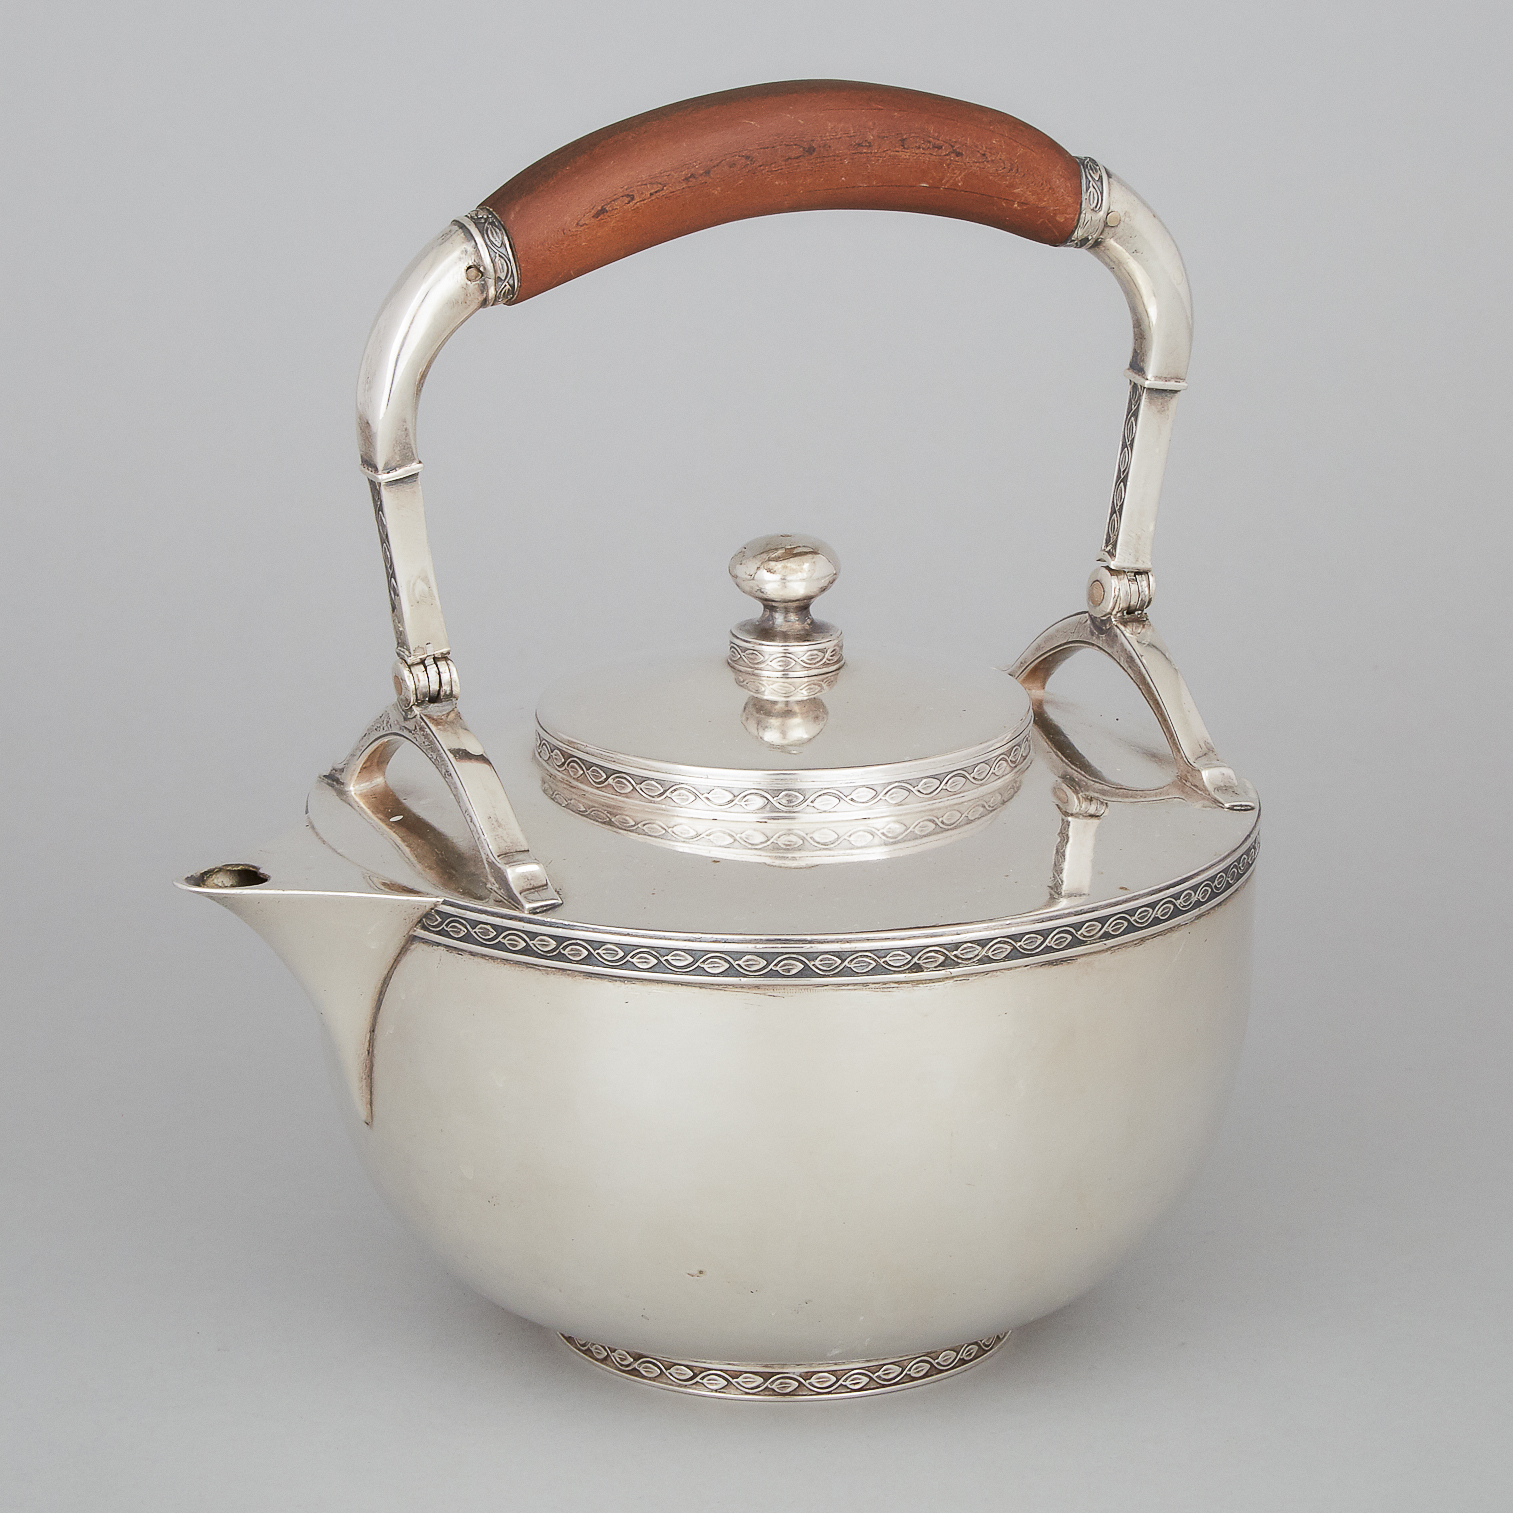 German Silver Tea Kettle, A. Guttentag, Berlin, early 20th century